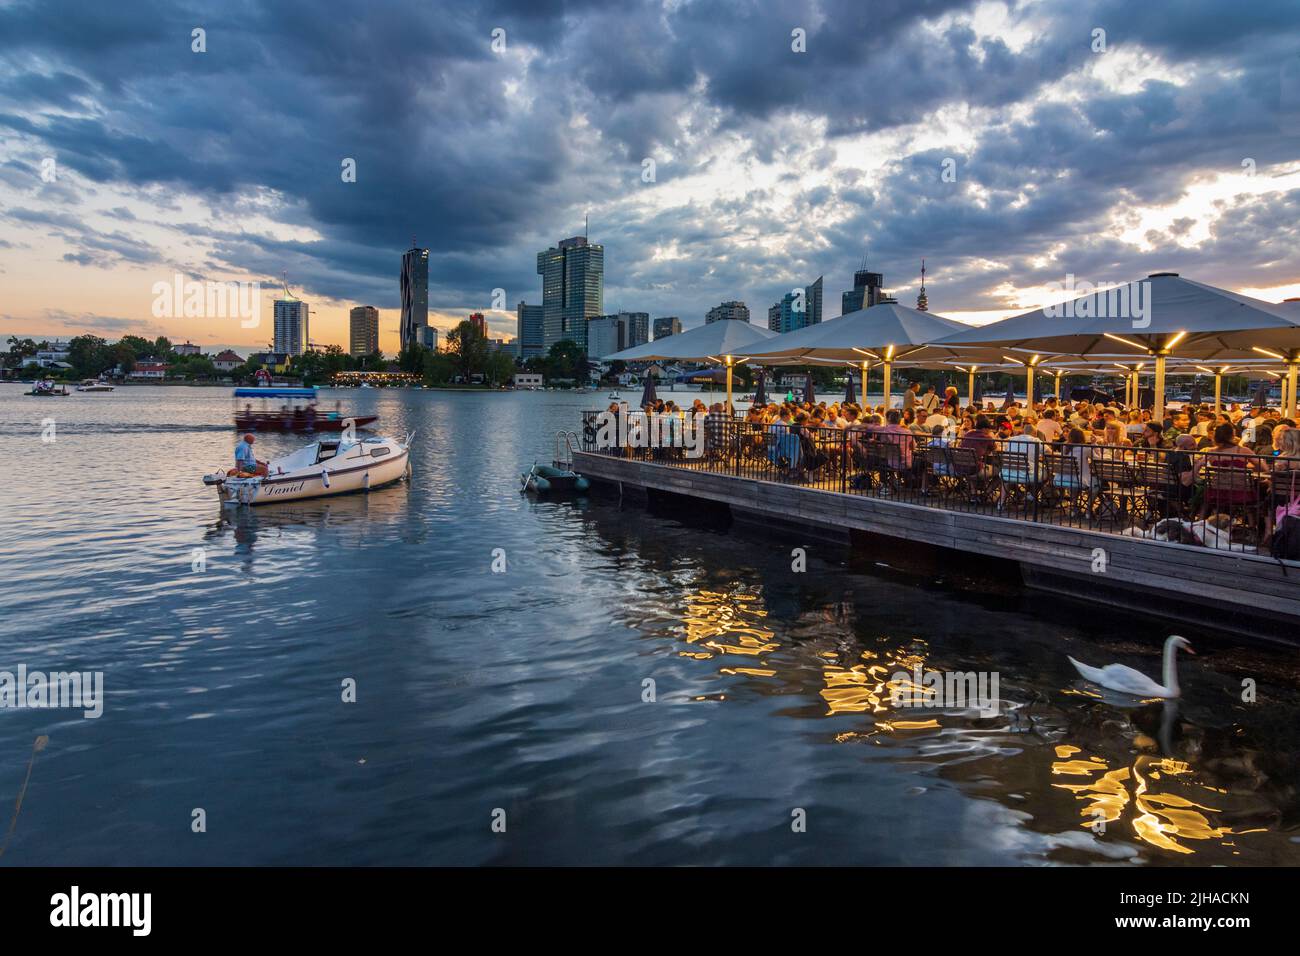 Viena, Viena: Lago oxbow Alte Donau (Danubio antiguo), puesta de sol, restaurante flotante Strandcafe, Donaucity con la torre DC 1 y la torre IZD, Donauturm (Danubio T Foto de stock